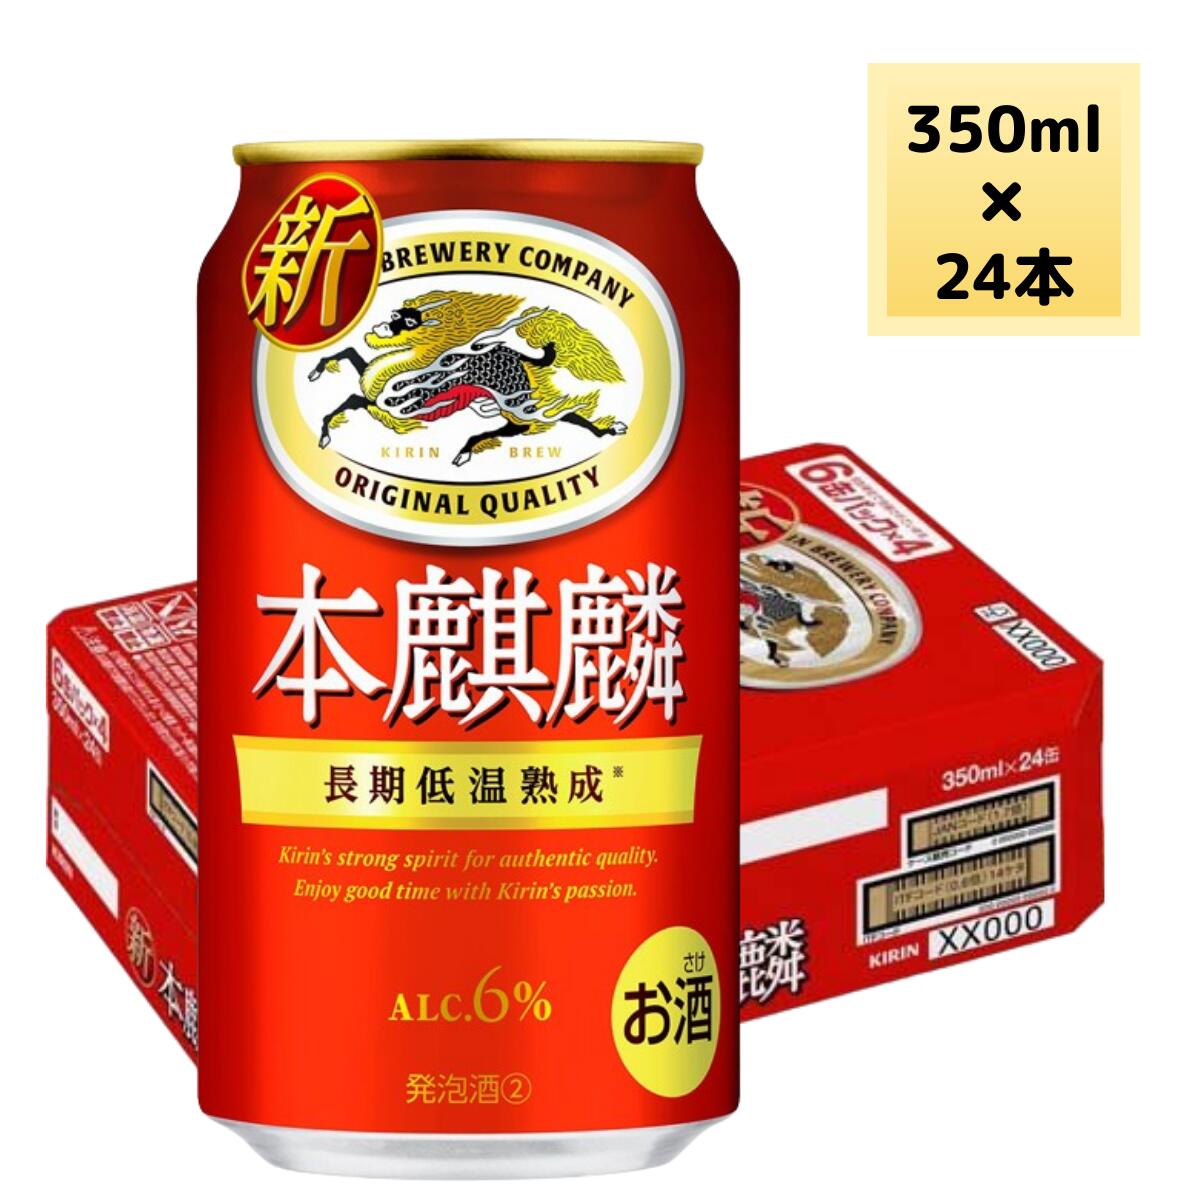 本麒麟 350ml × 24本 新ジャンル 缶ビール ケース